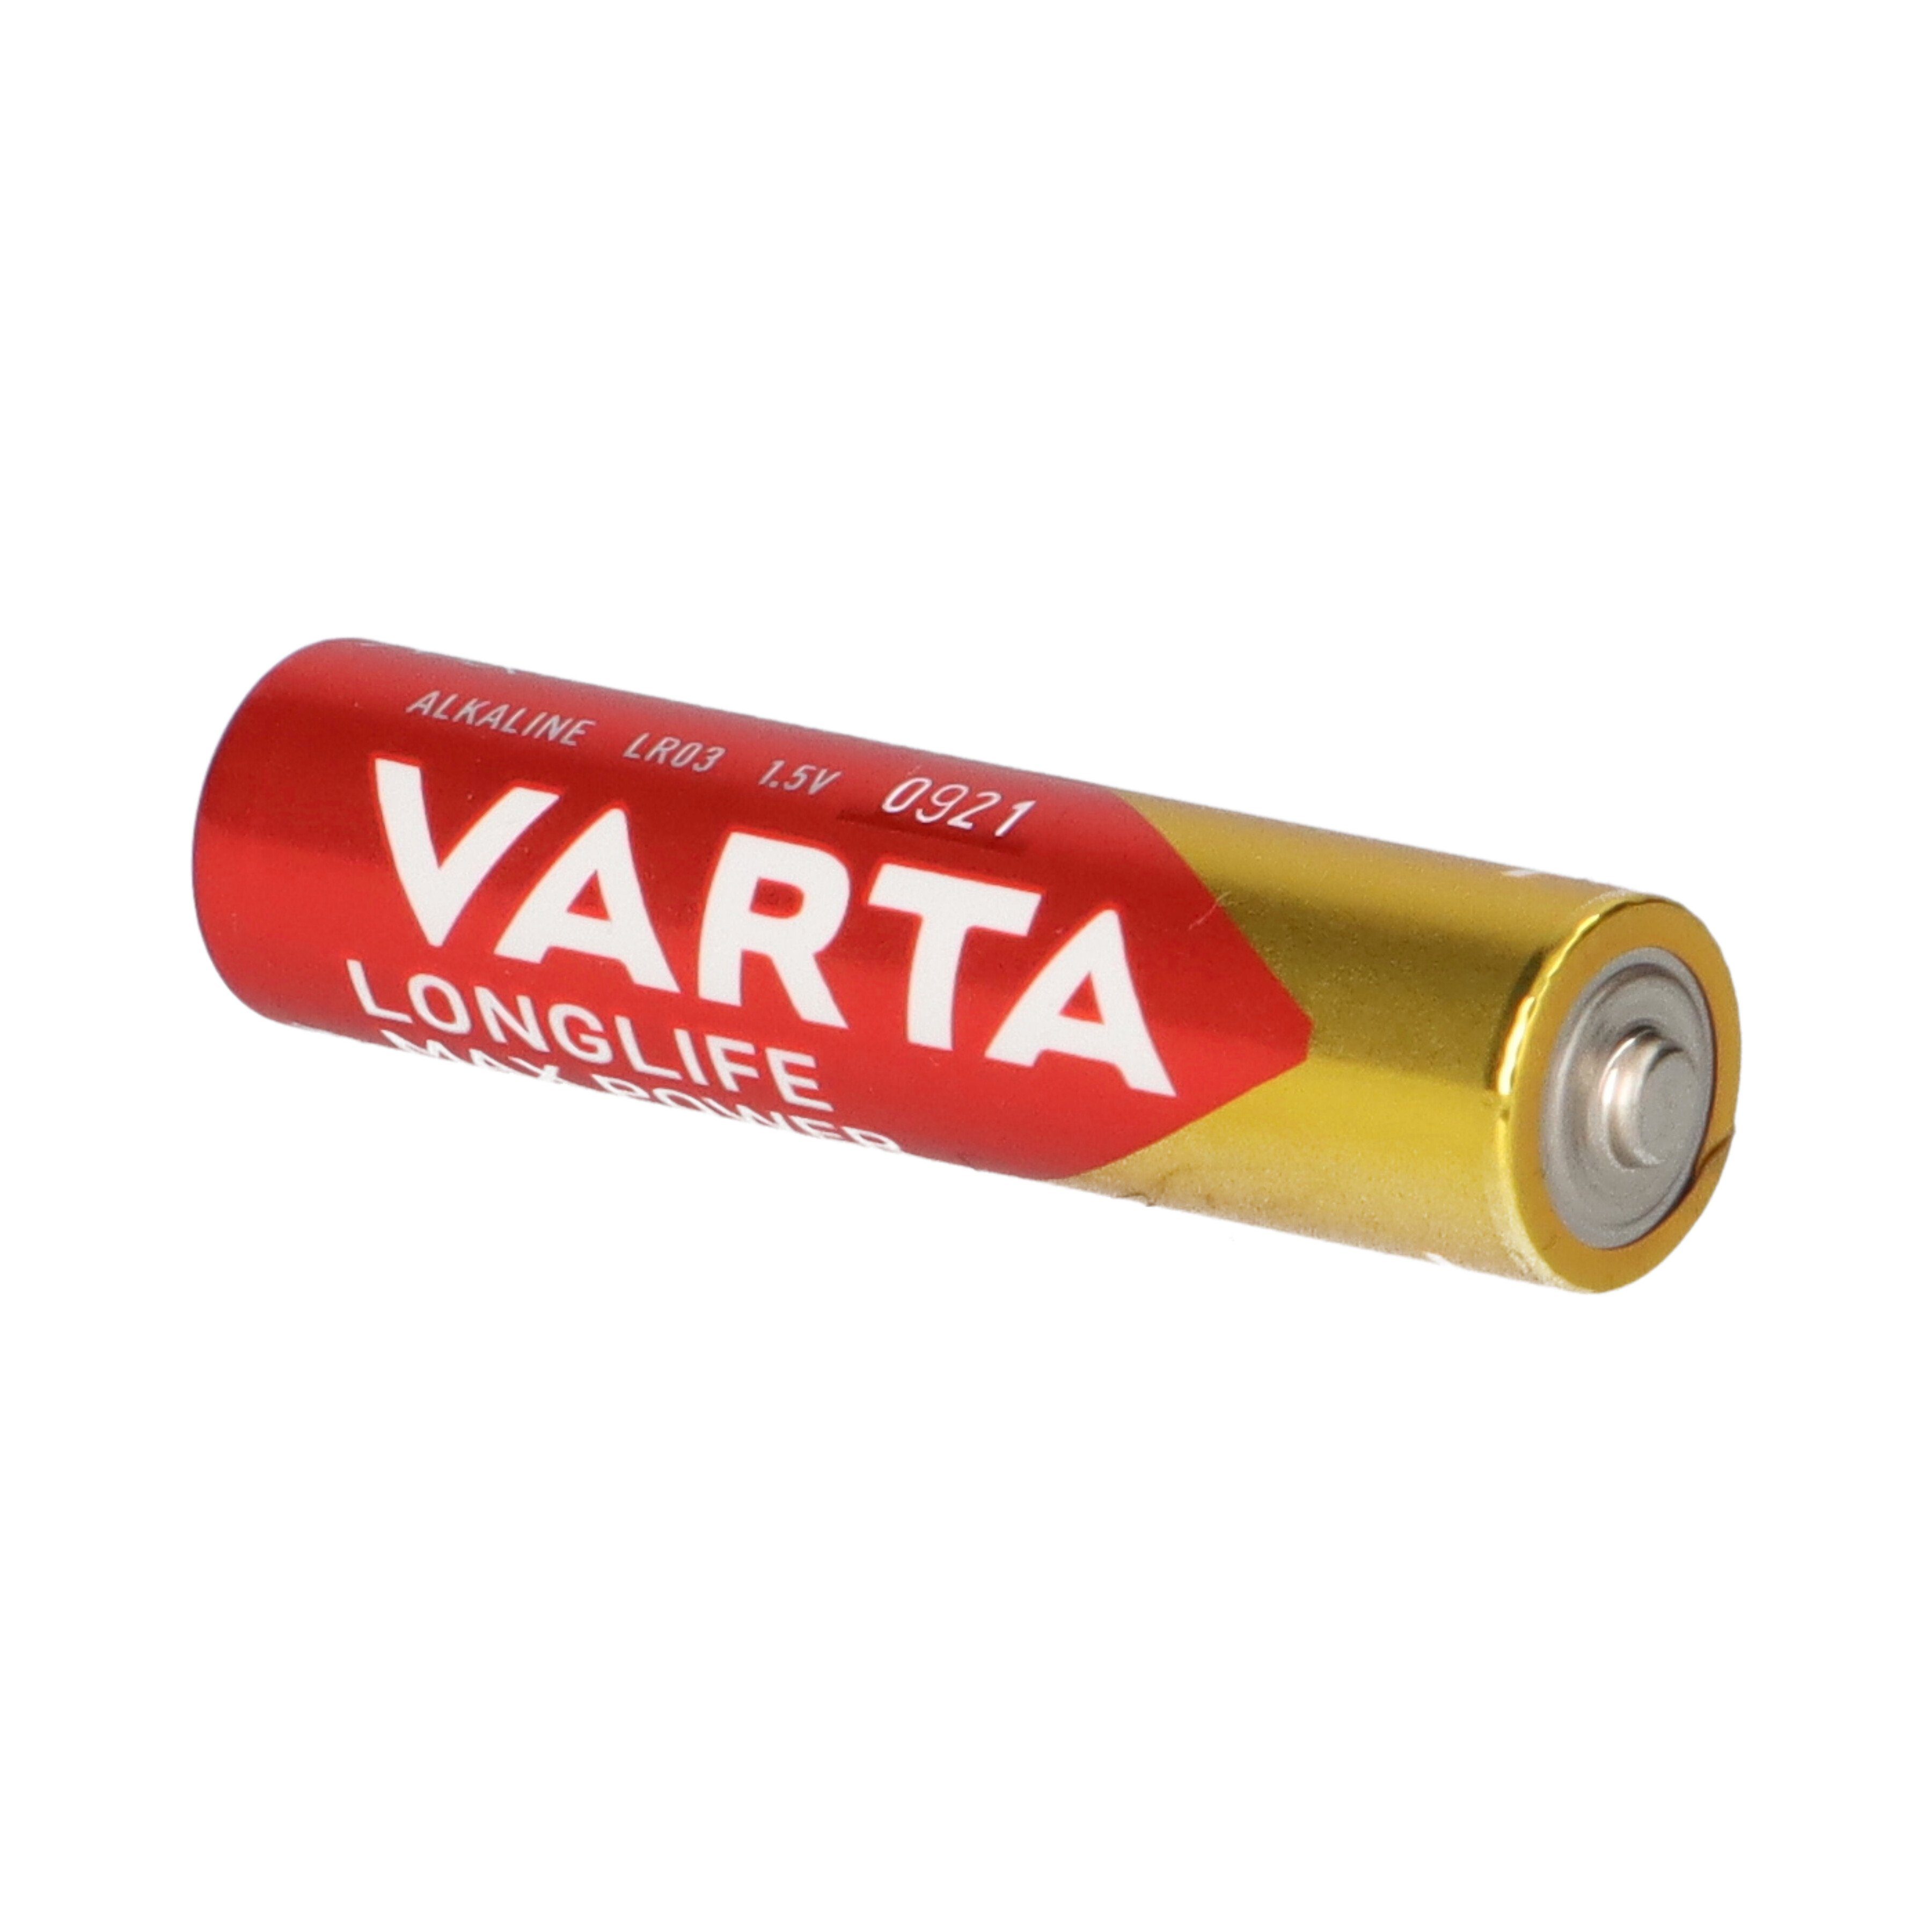 VARTA Varta Blister Power 4er Batterie AAA 4703 Batterie Micro Longlife Max